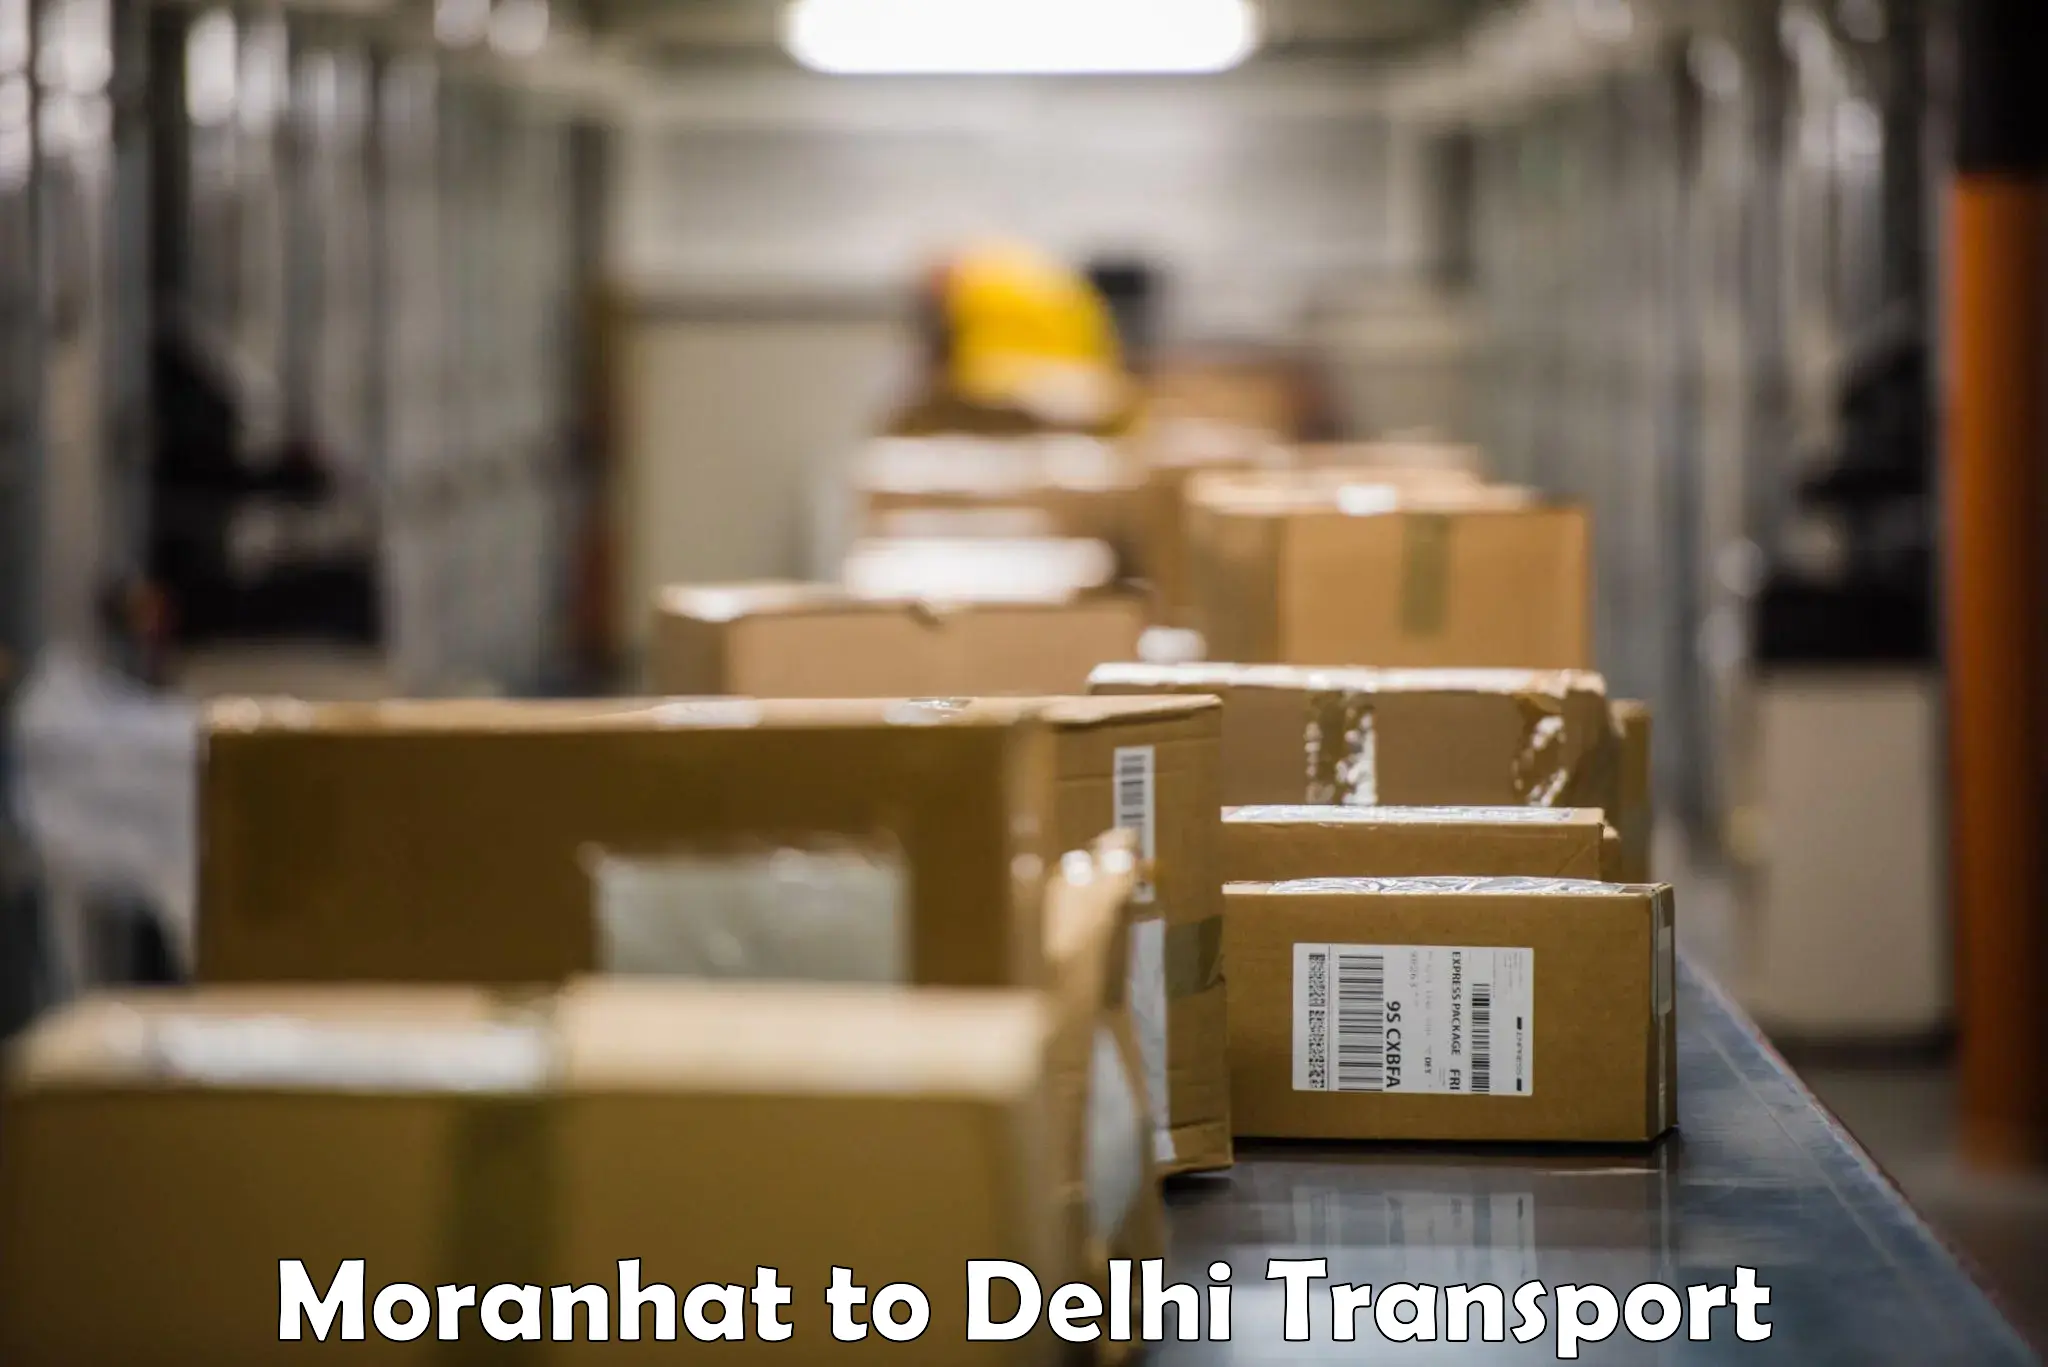 Shipping partner Moranhat to East Delhi